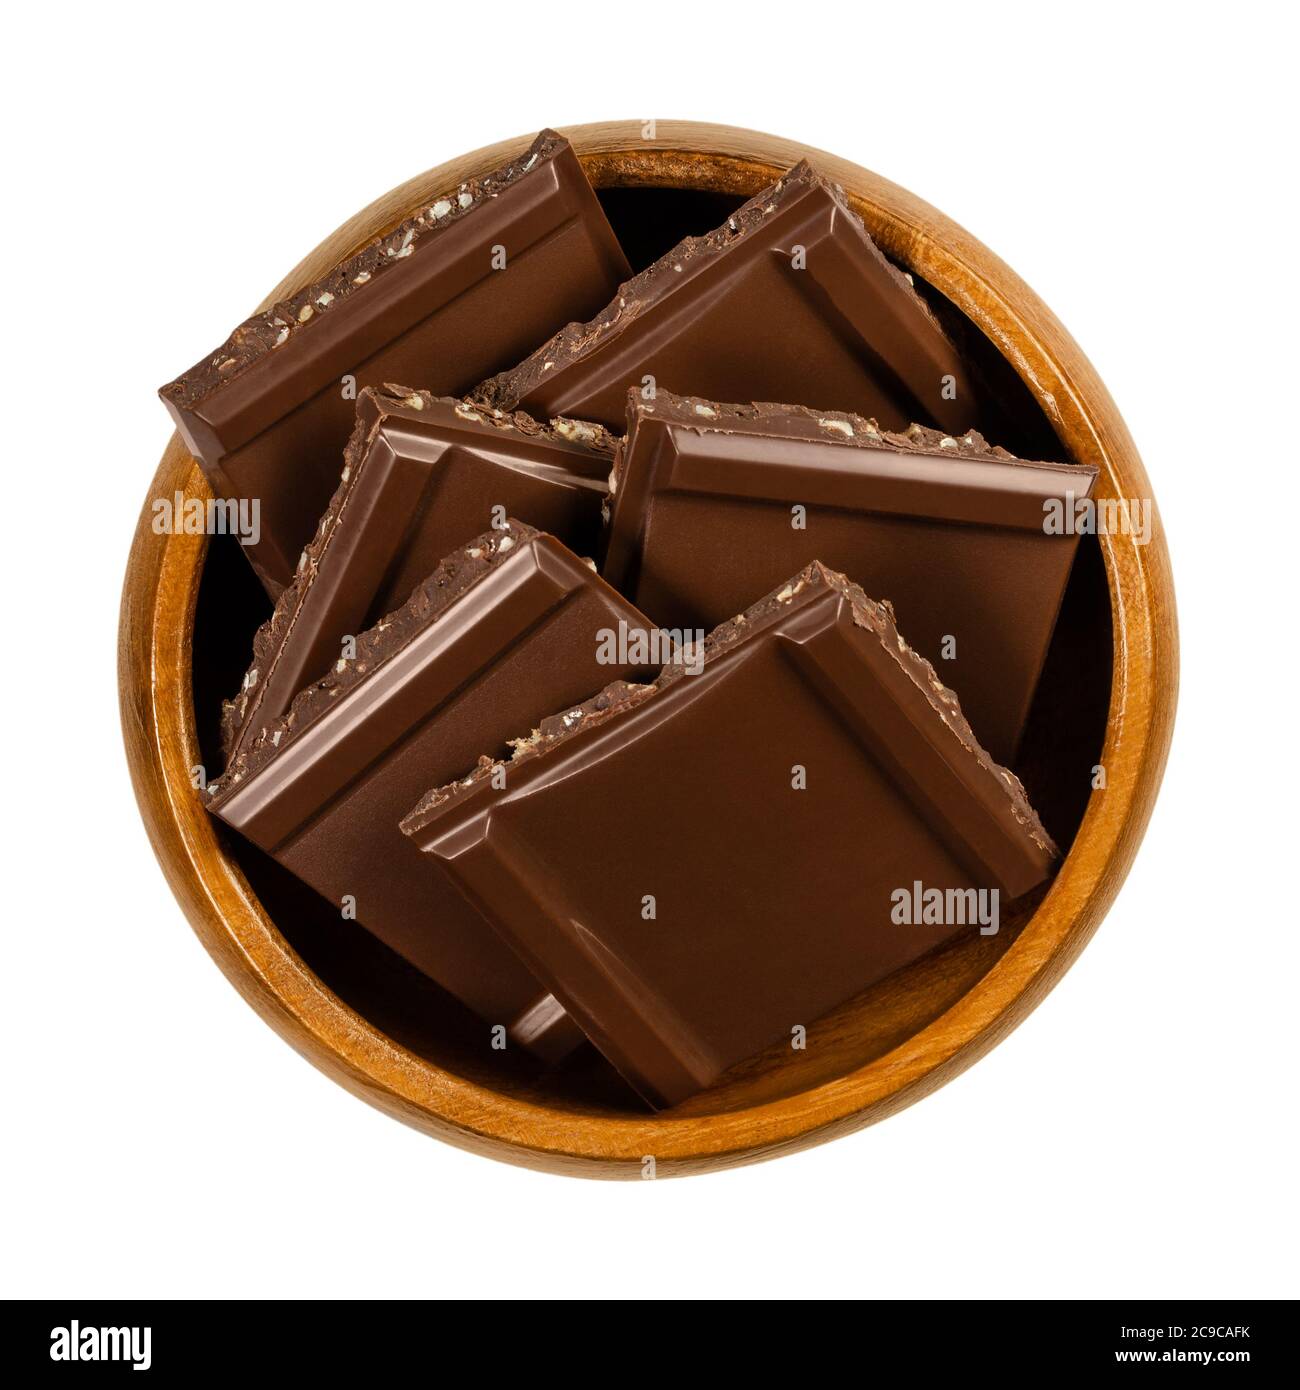 Cioccolato fondente, tagliato a pezzi a forma di quadrato, in una ciotola di legno. Cioccolato nero con punte di noci fini, pronto da mangiare come dolce e leggermente amaro Foto Stock